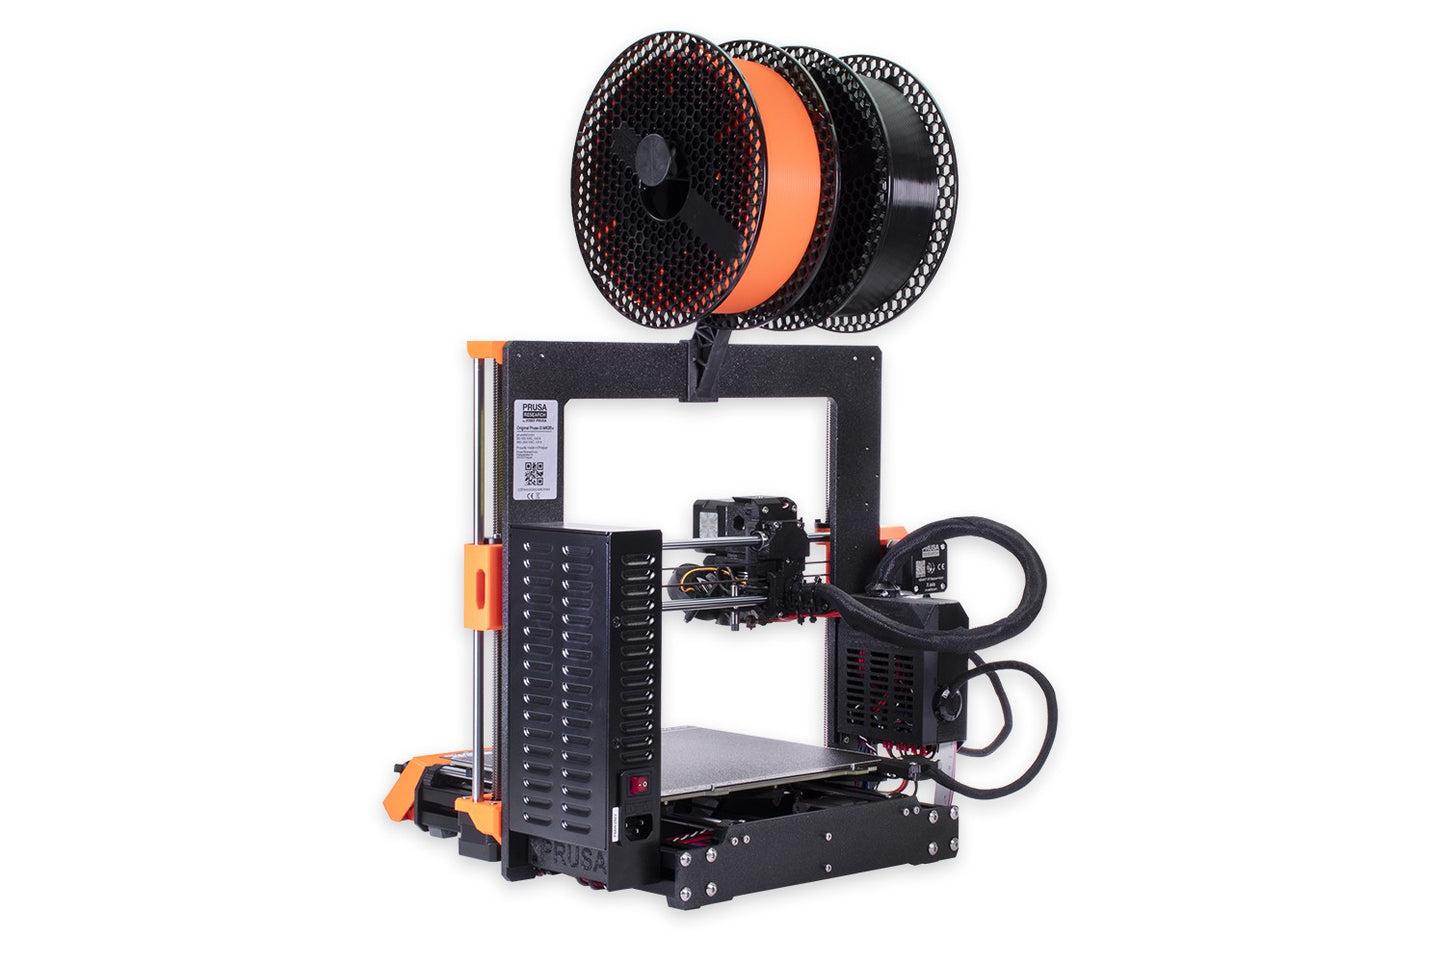 Virksomhedsbeskrivelse ambition Haiku Original Prusa i3 MK3S+ 3D printer – Printed Solid